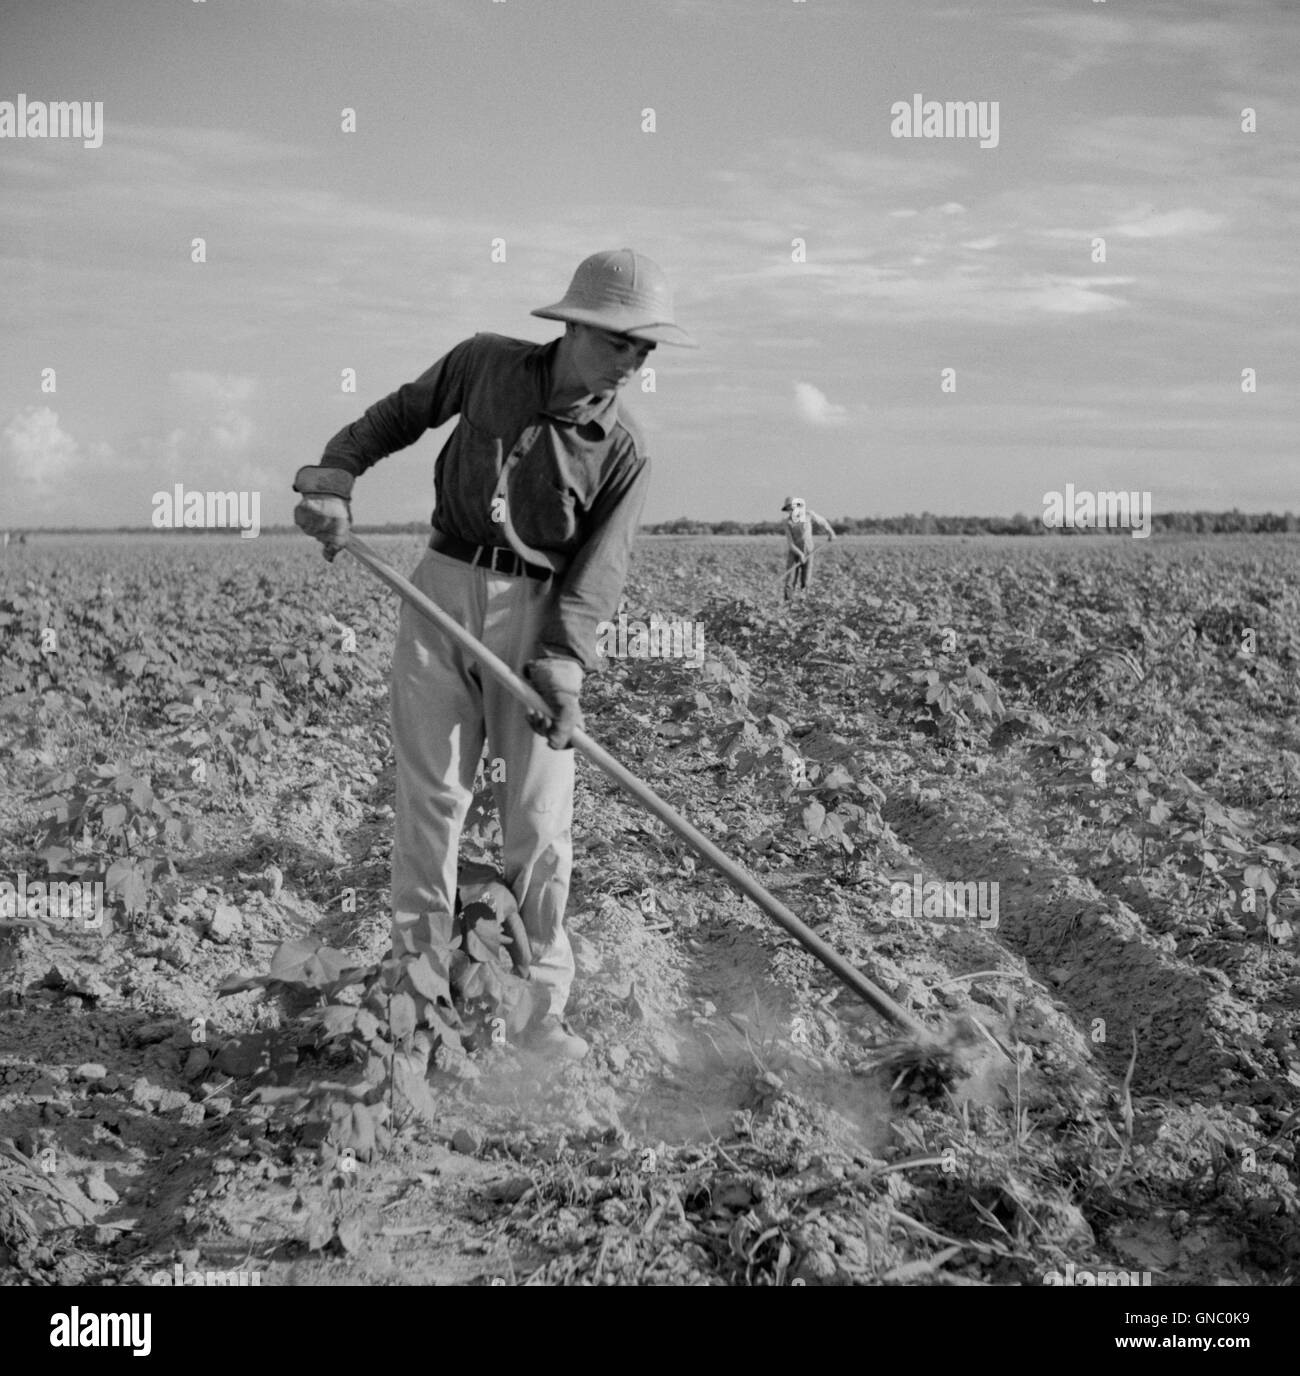 Farmer Hoeing Cotton, Allen Plantation cooperative Association, vicino a Natchitoches, Louisiana, Stati Uniti, Marion Post Wolcott, STATI UNITI Farm Security Administration, giugno 1940 Foto Stock